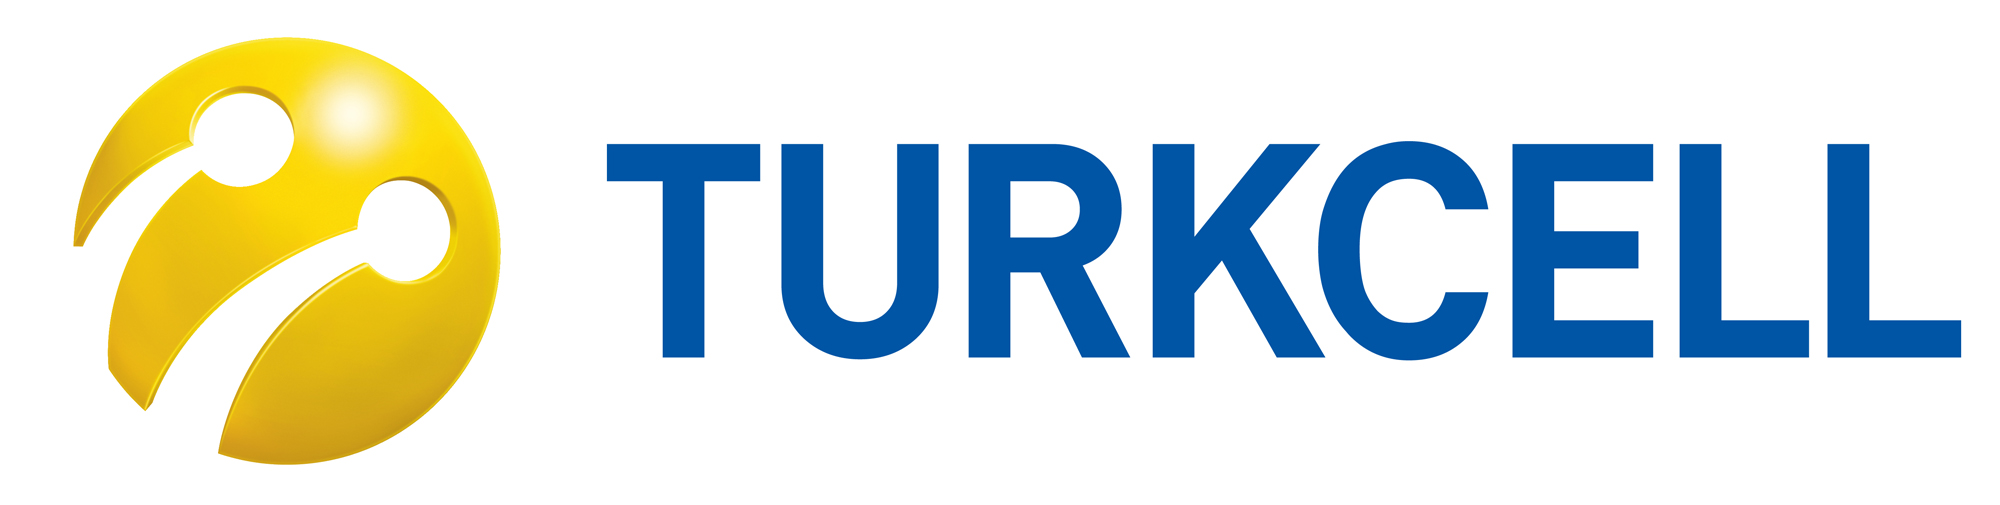 Turkcell Technology Summit